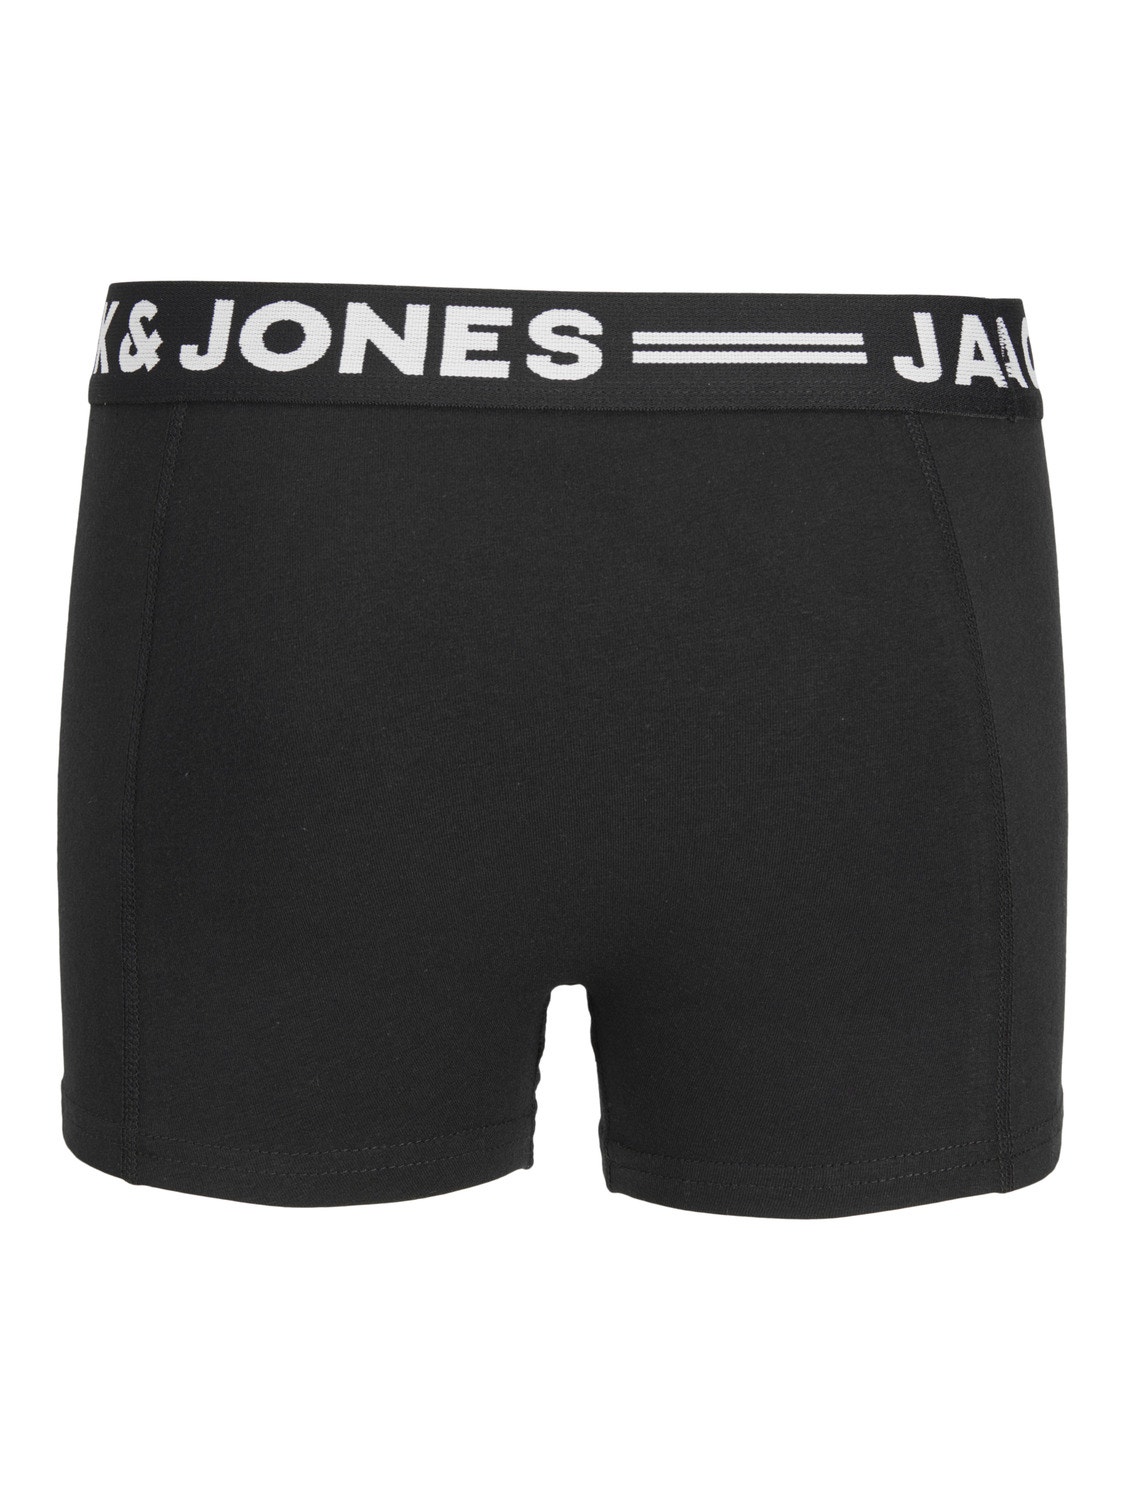 Jack & Jones 3-pack Boxershorts Voor jongens -Black - 12149293